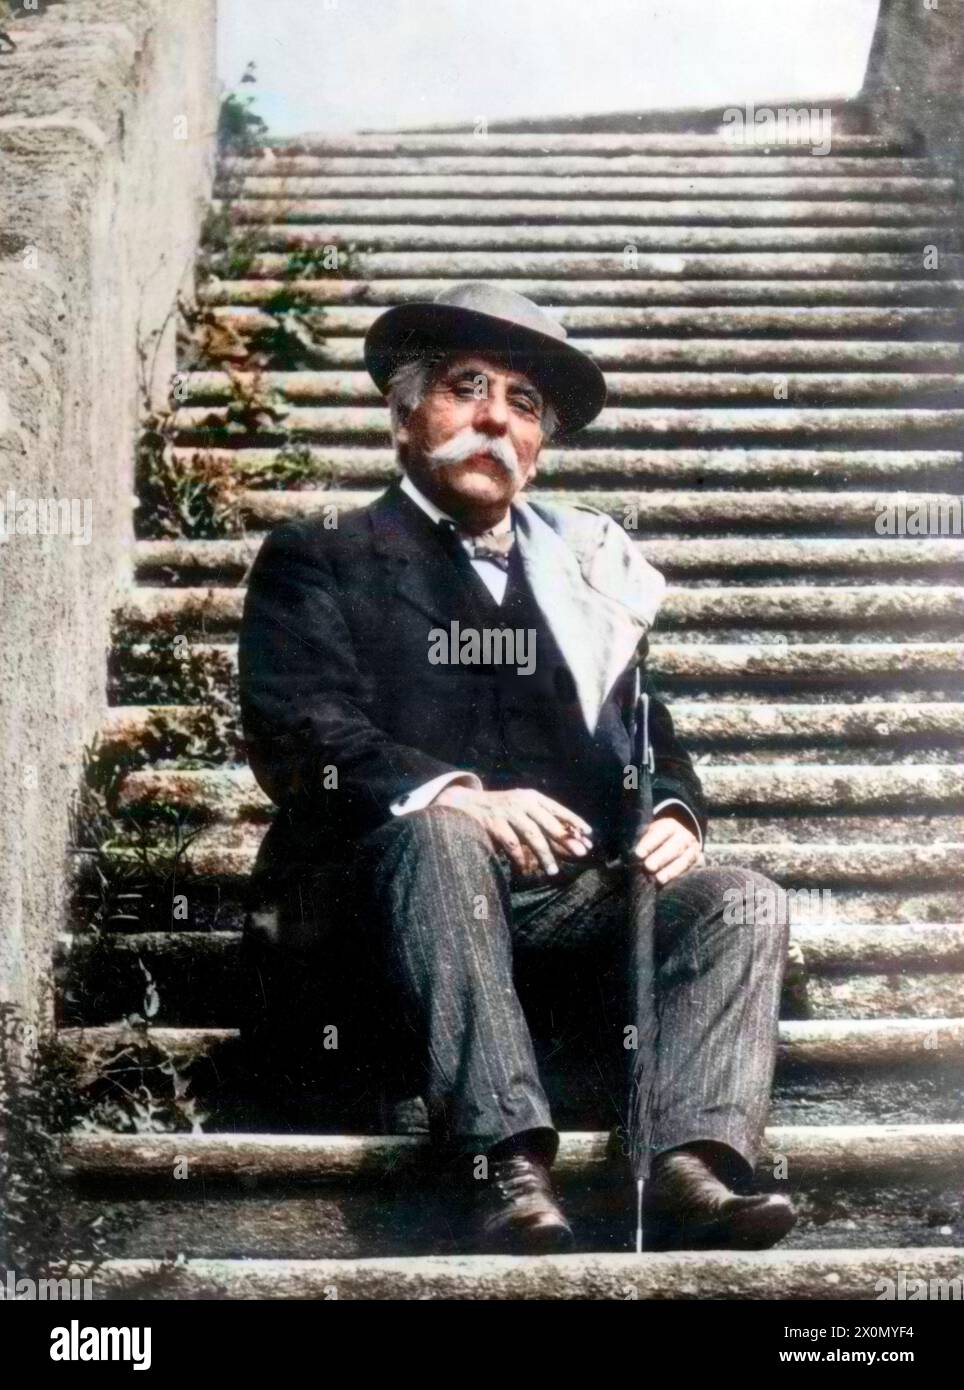 Gabriel Fauré assis sur un escalier, cigarette à la main - coloration ultérieure. Image colorée numériquement Banque D'Images